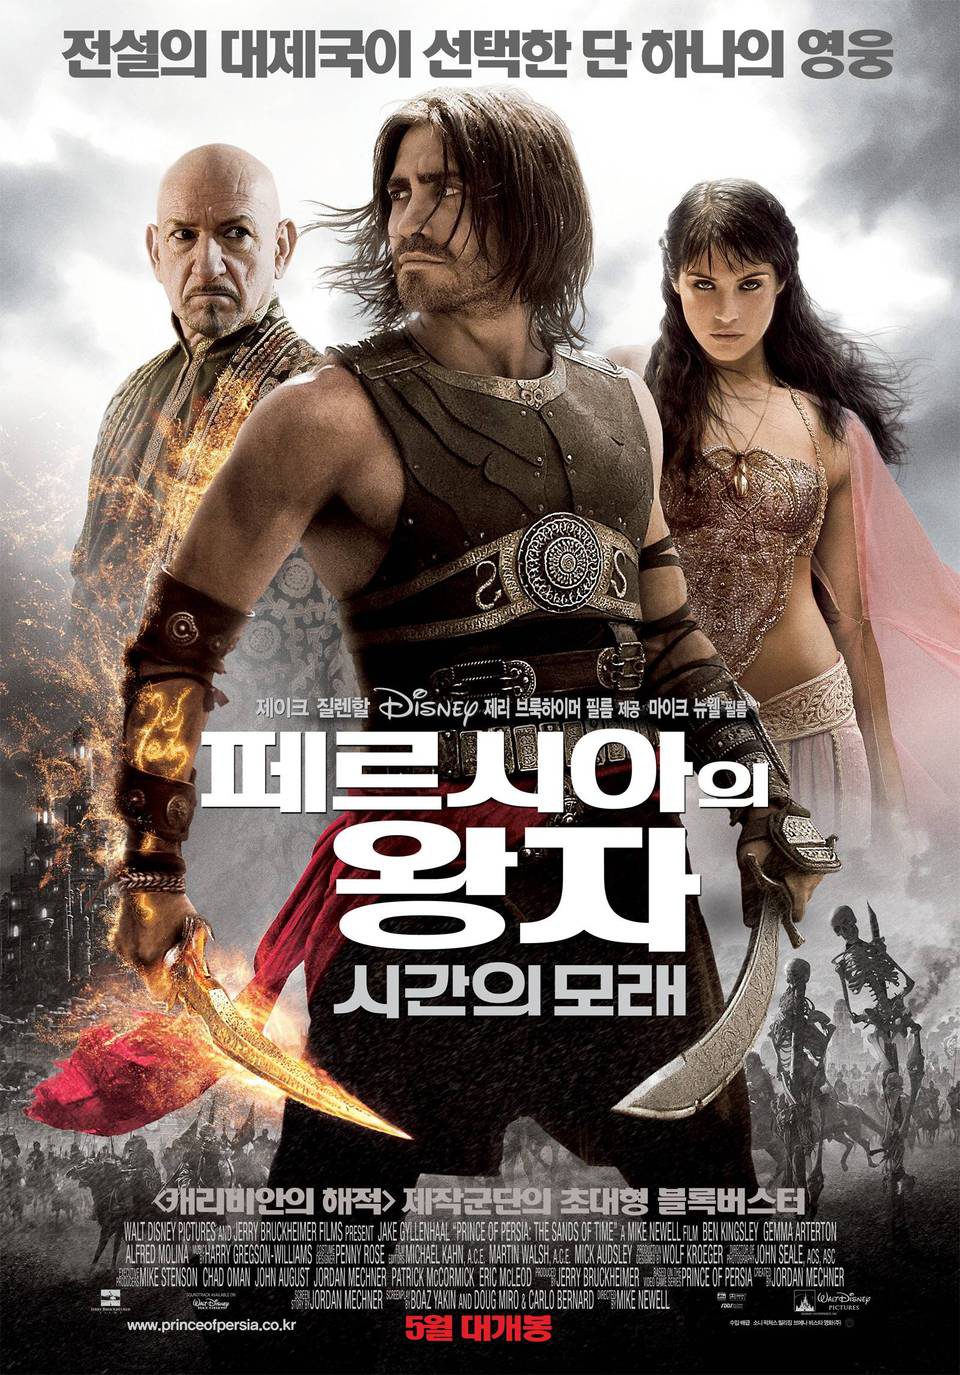 Cartel de Prince of Persia: las arenas del tiempo - Corea